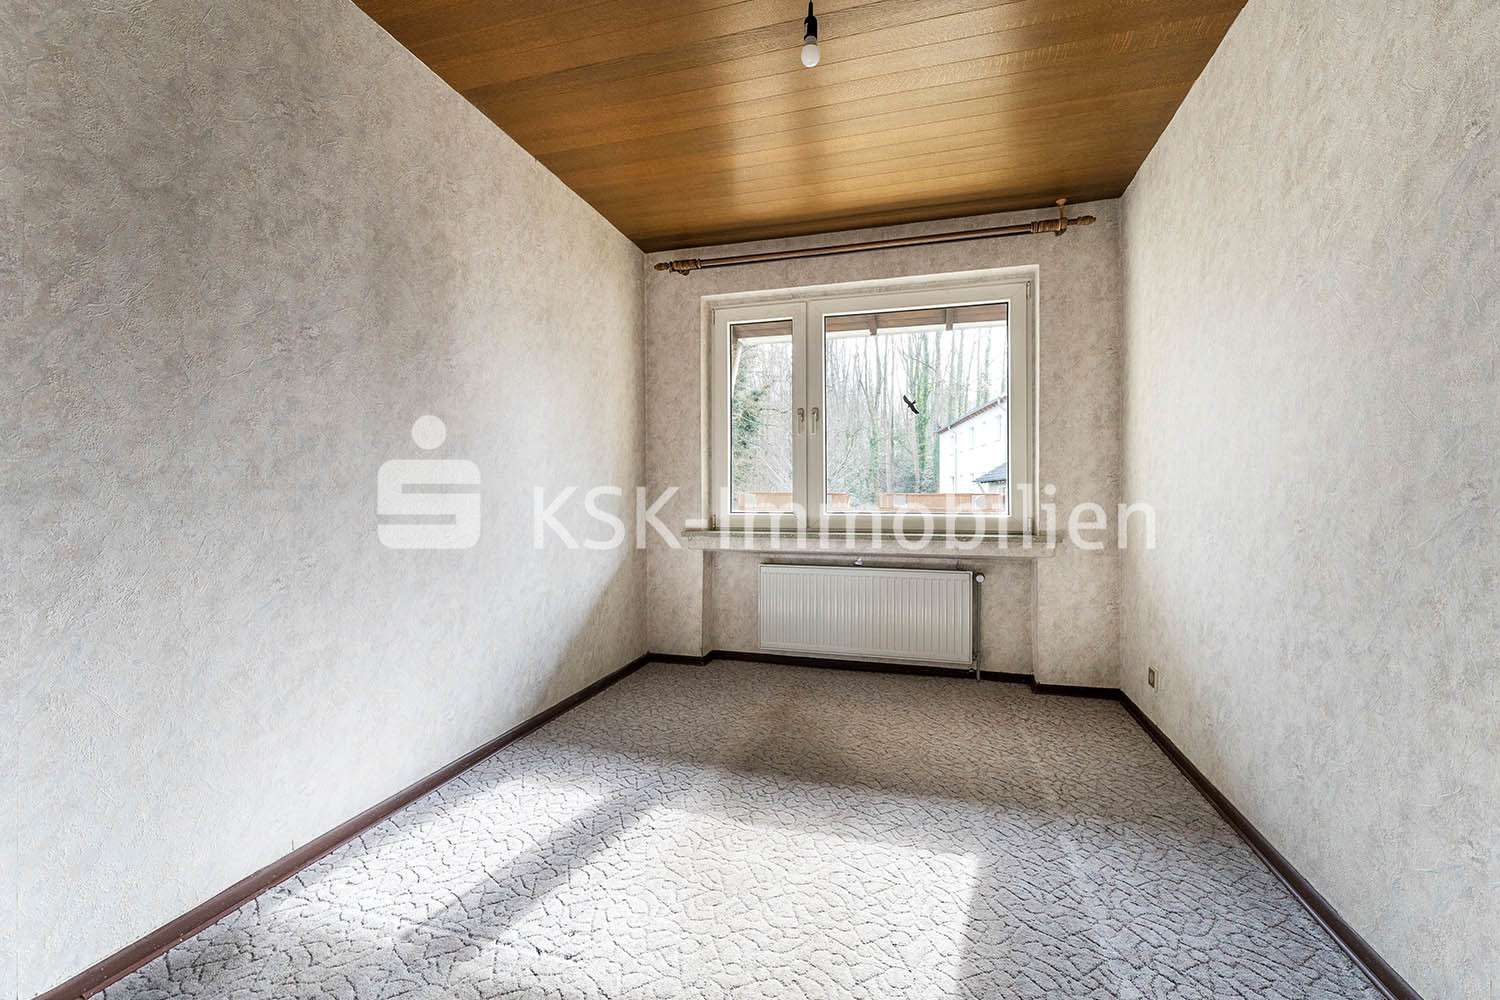 111270 Zimmer - Etagenwohnung in 42799 Leichlingen (Rheinland) mit 76m² kaufen